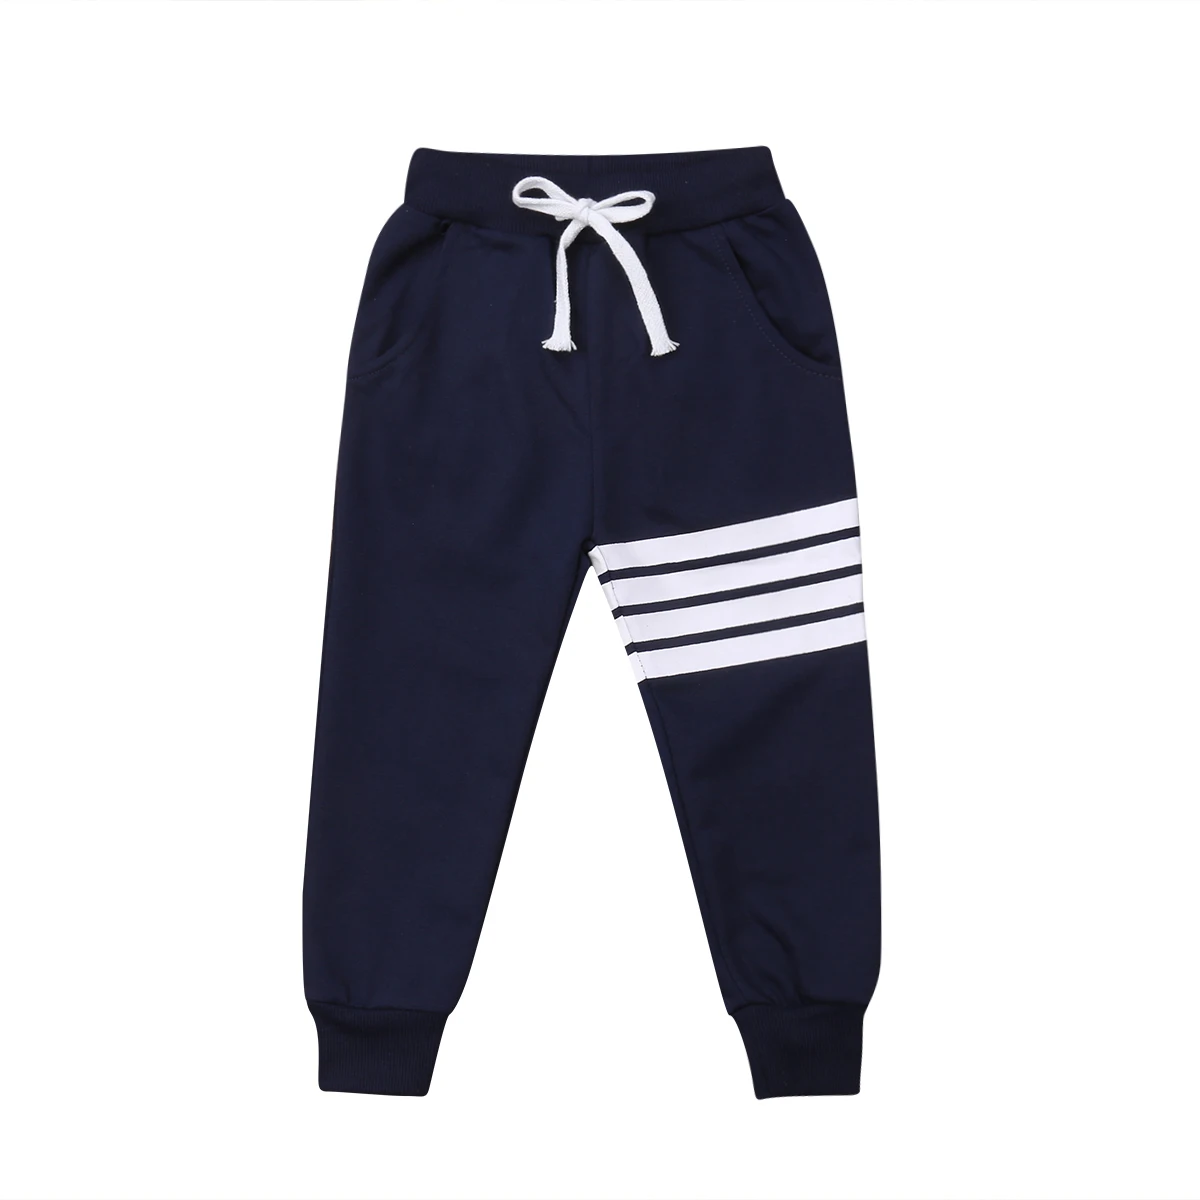 Canis/длинные штаны-шаровары в полоску для мальчиков и девочек штаны для малышей спортивные штаны - Цвет: Синий